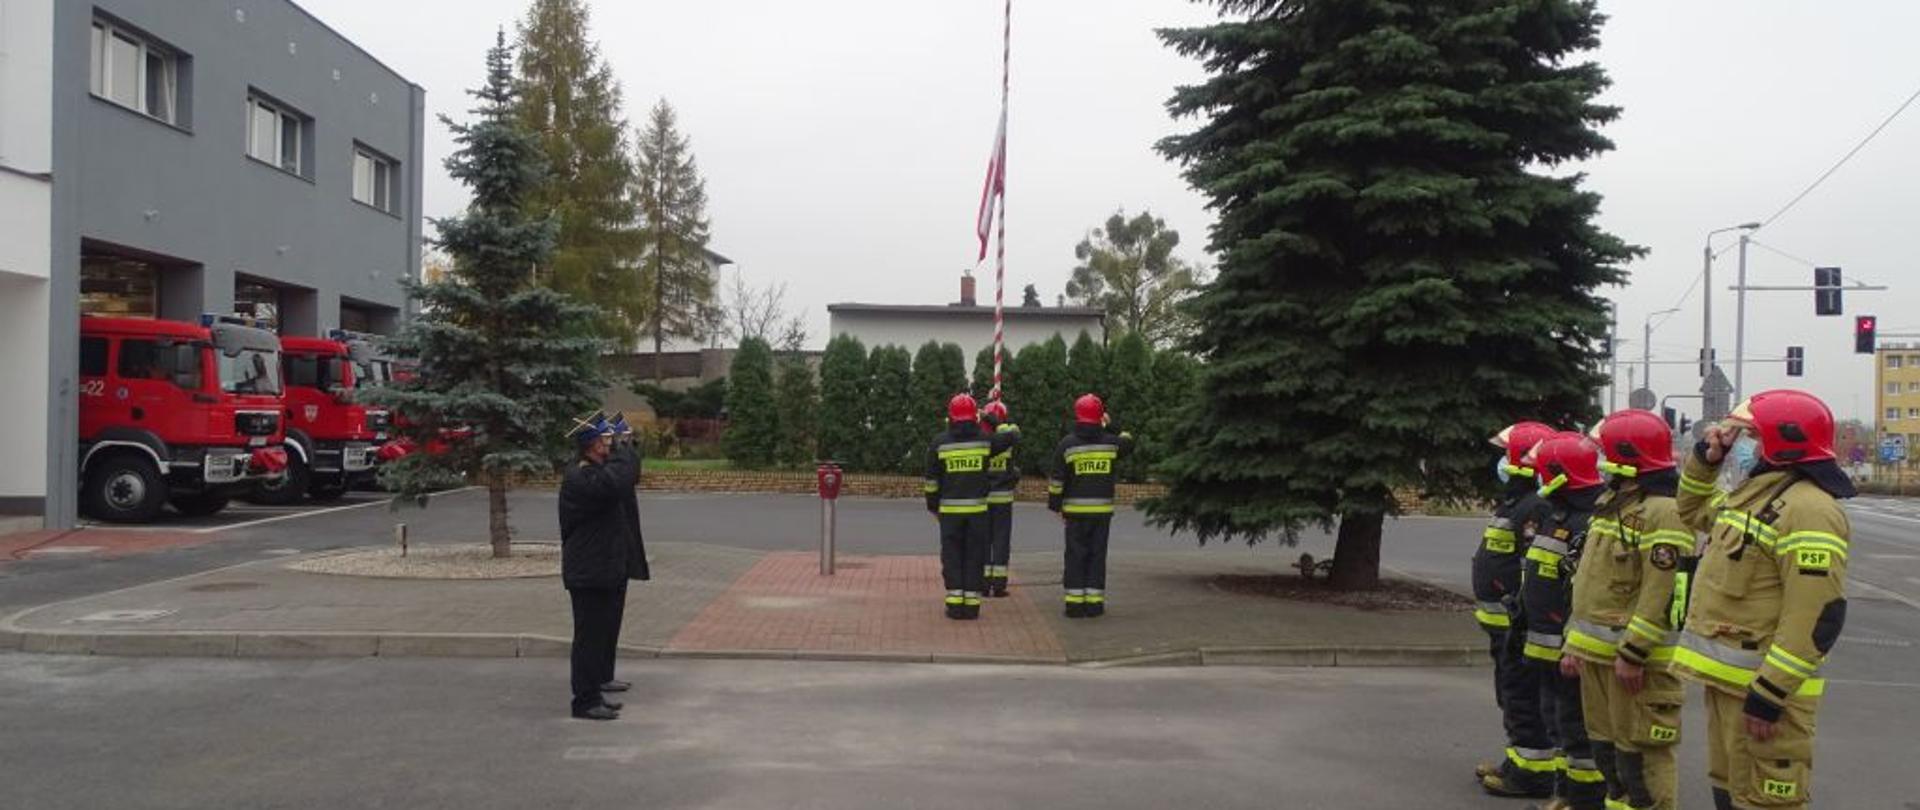 strażacy podnoszą flagę państwową na maszt